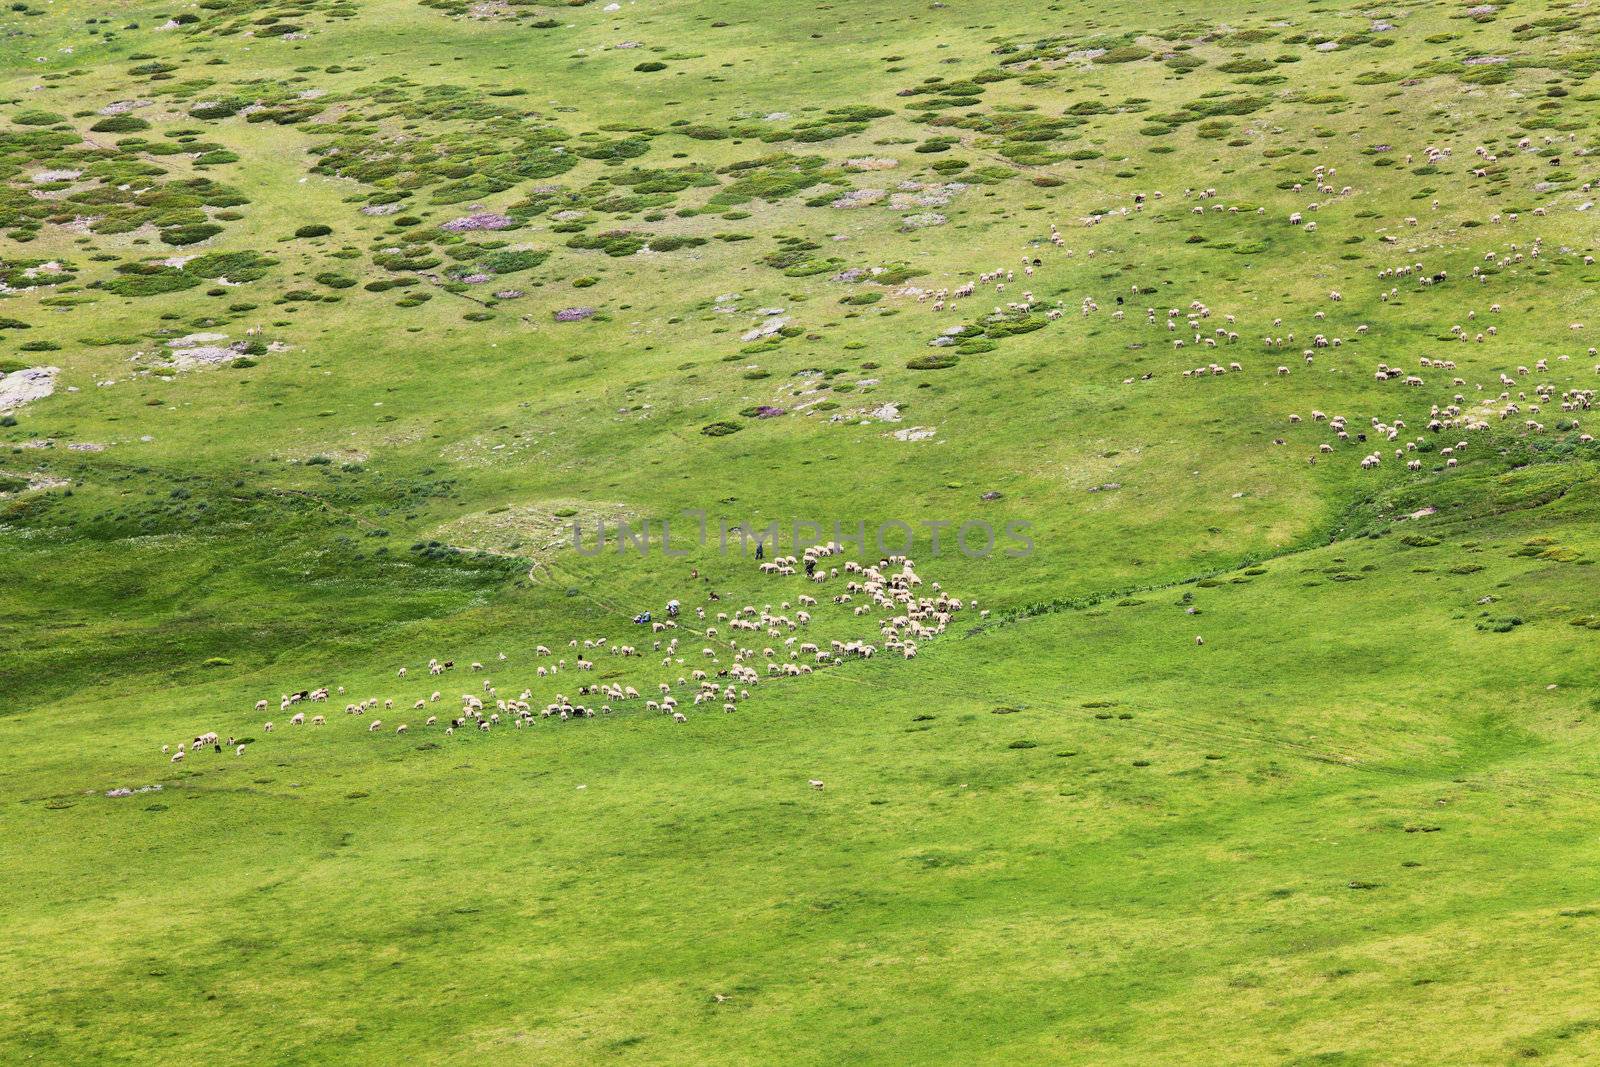 herds of sheep by kokimk